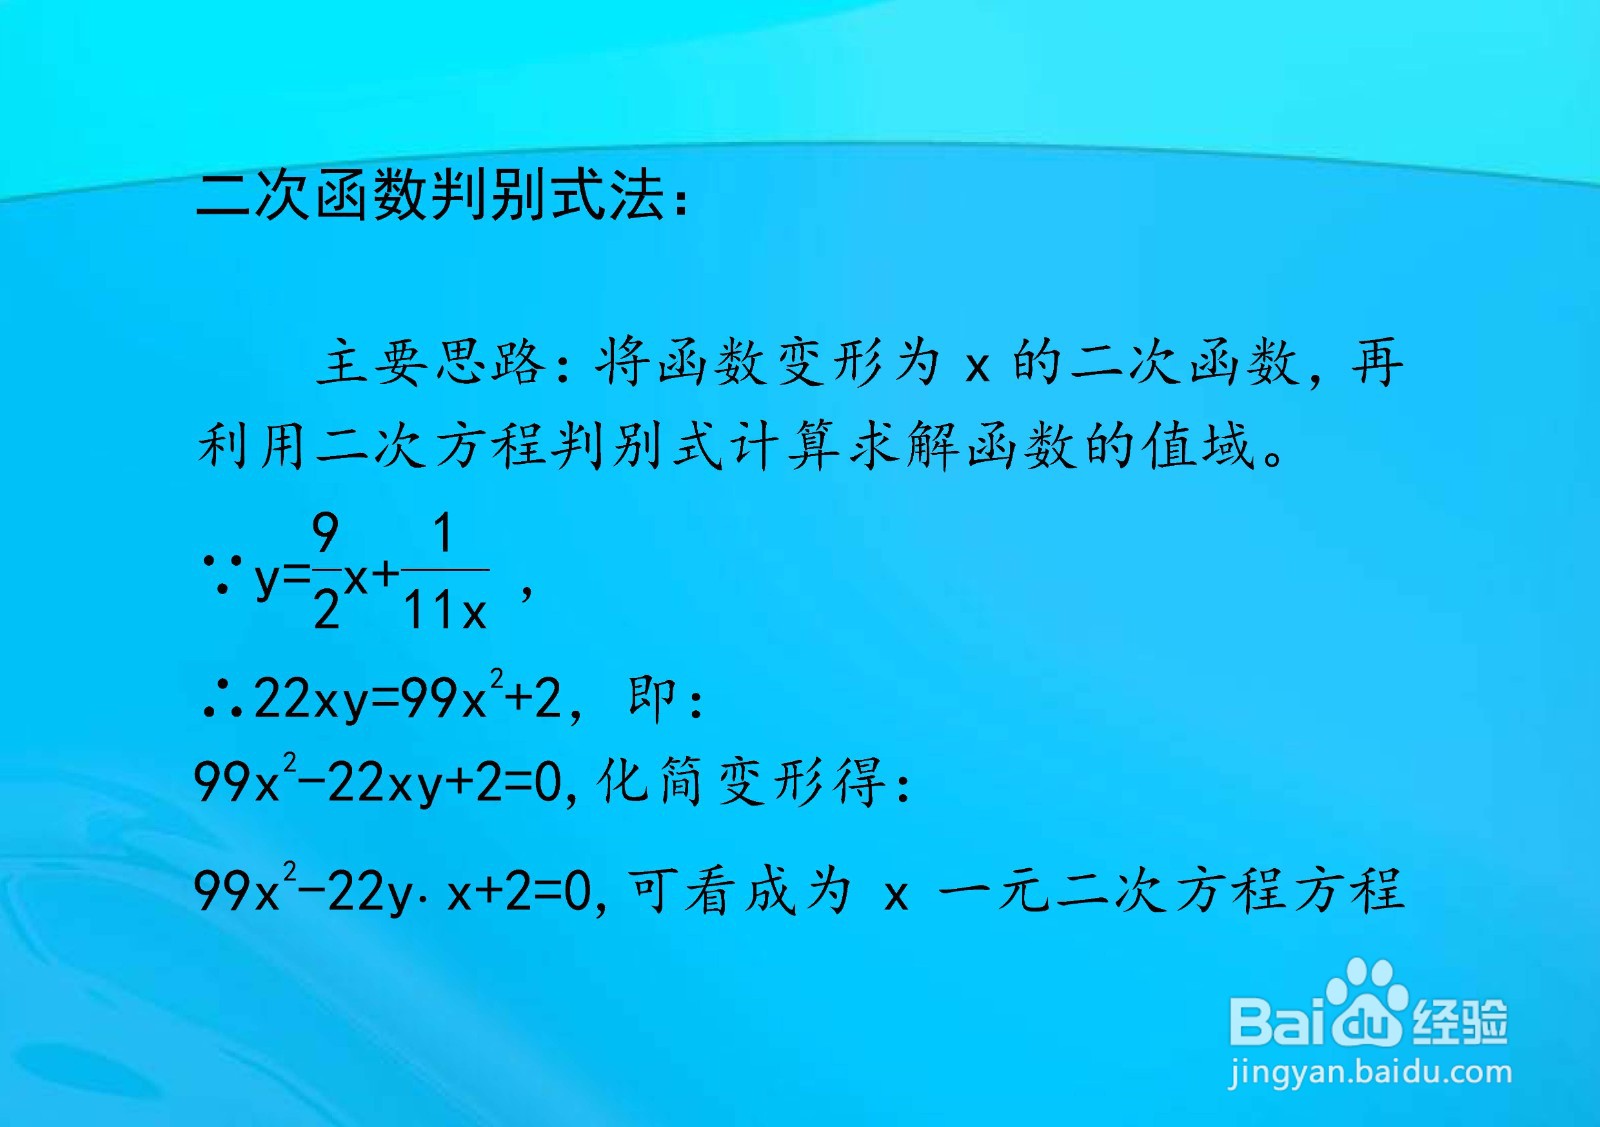 多种方法计算y=9x/2+1/11x的值域